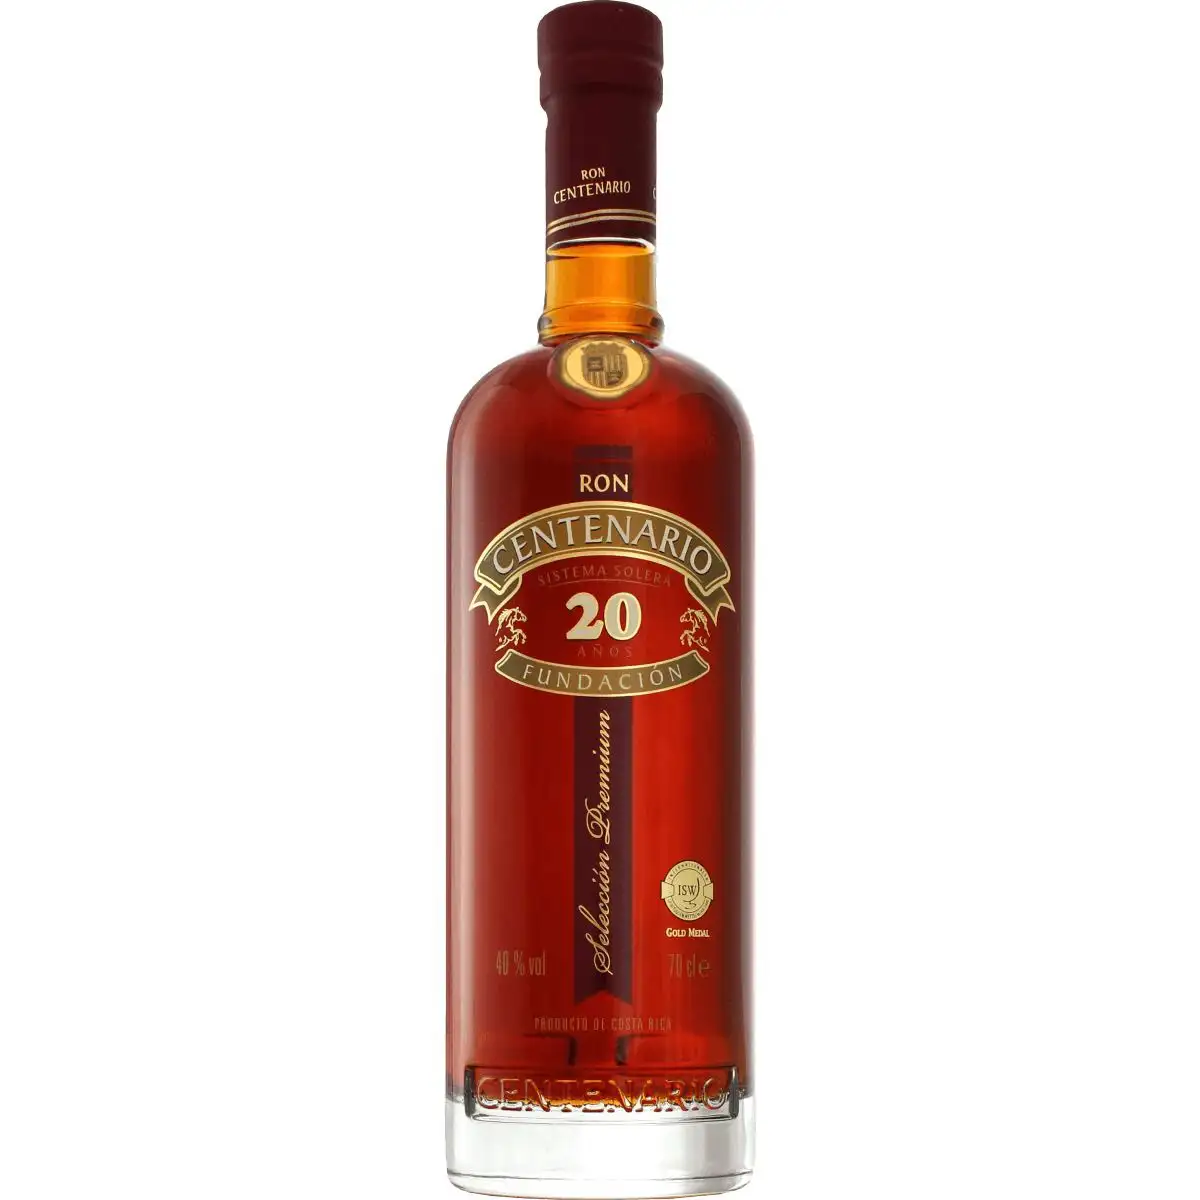 Image of the front of the bottle of the rum Centenario Fundación 20 Años Reserva Especial